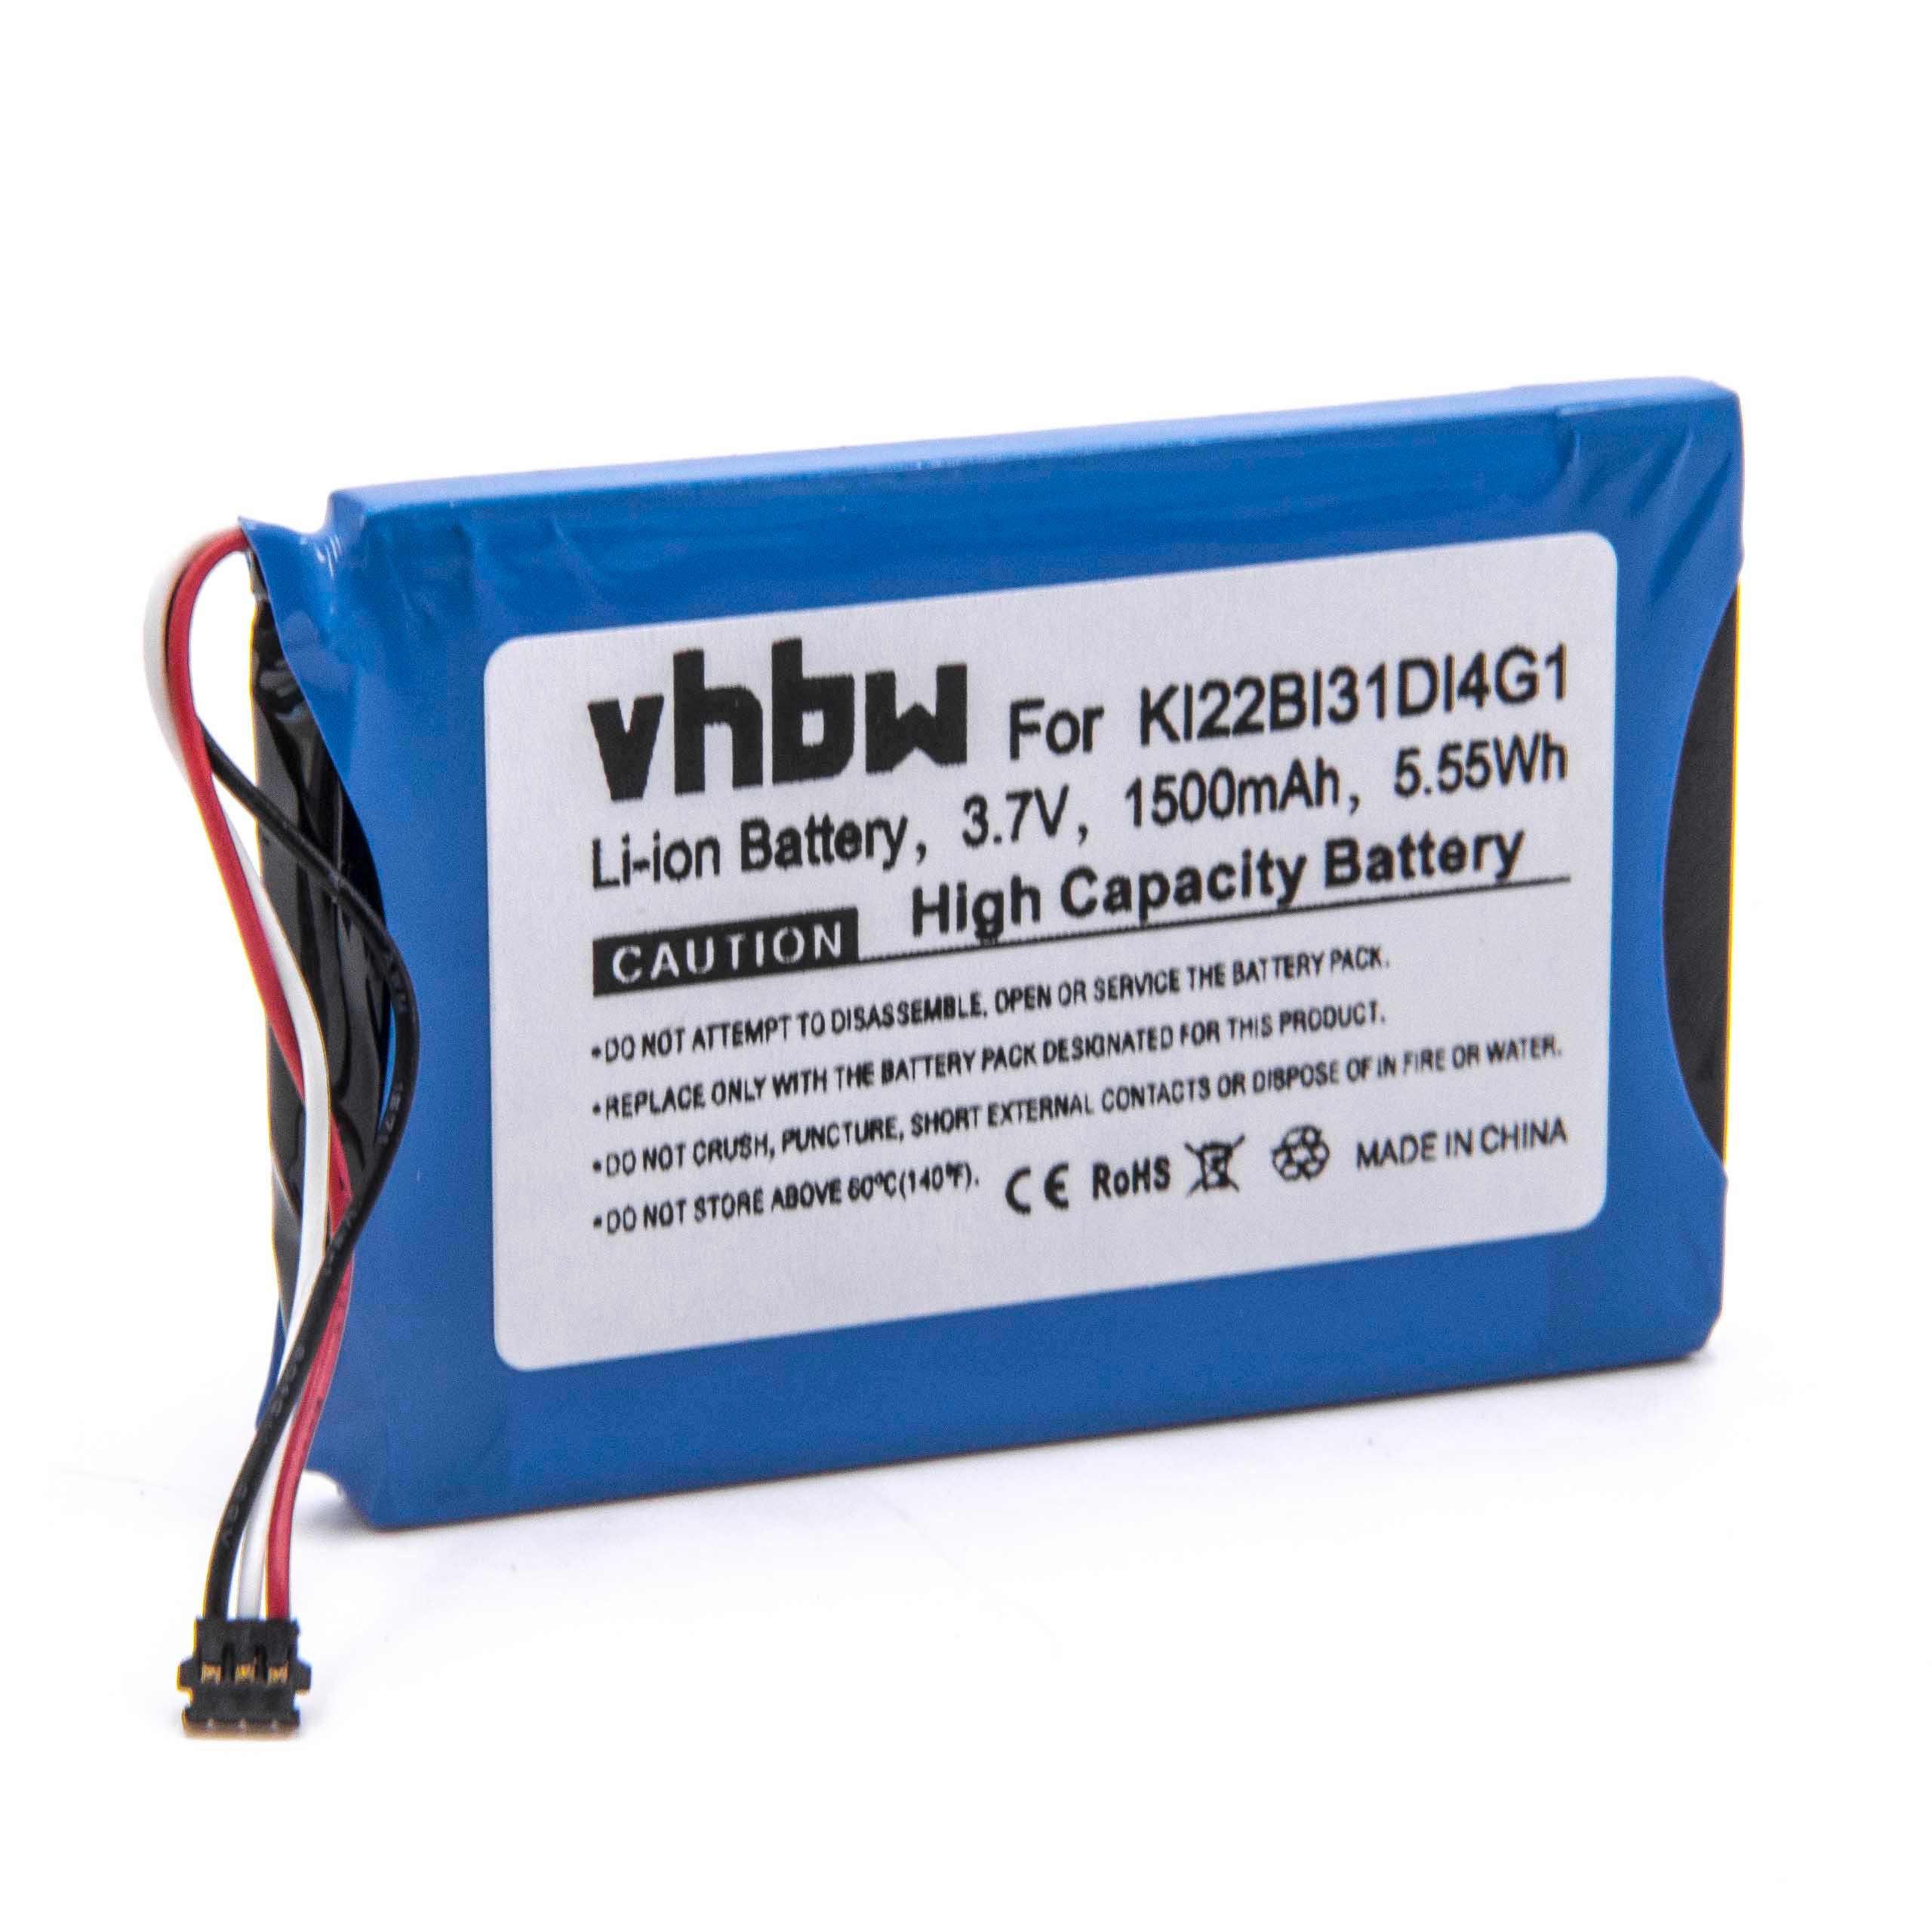 Batterie remplace Garmin KI22BI31DI4G1 pour navigation GPS - 1500mAh 3,7V Li-ion